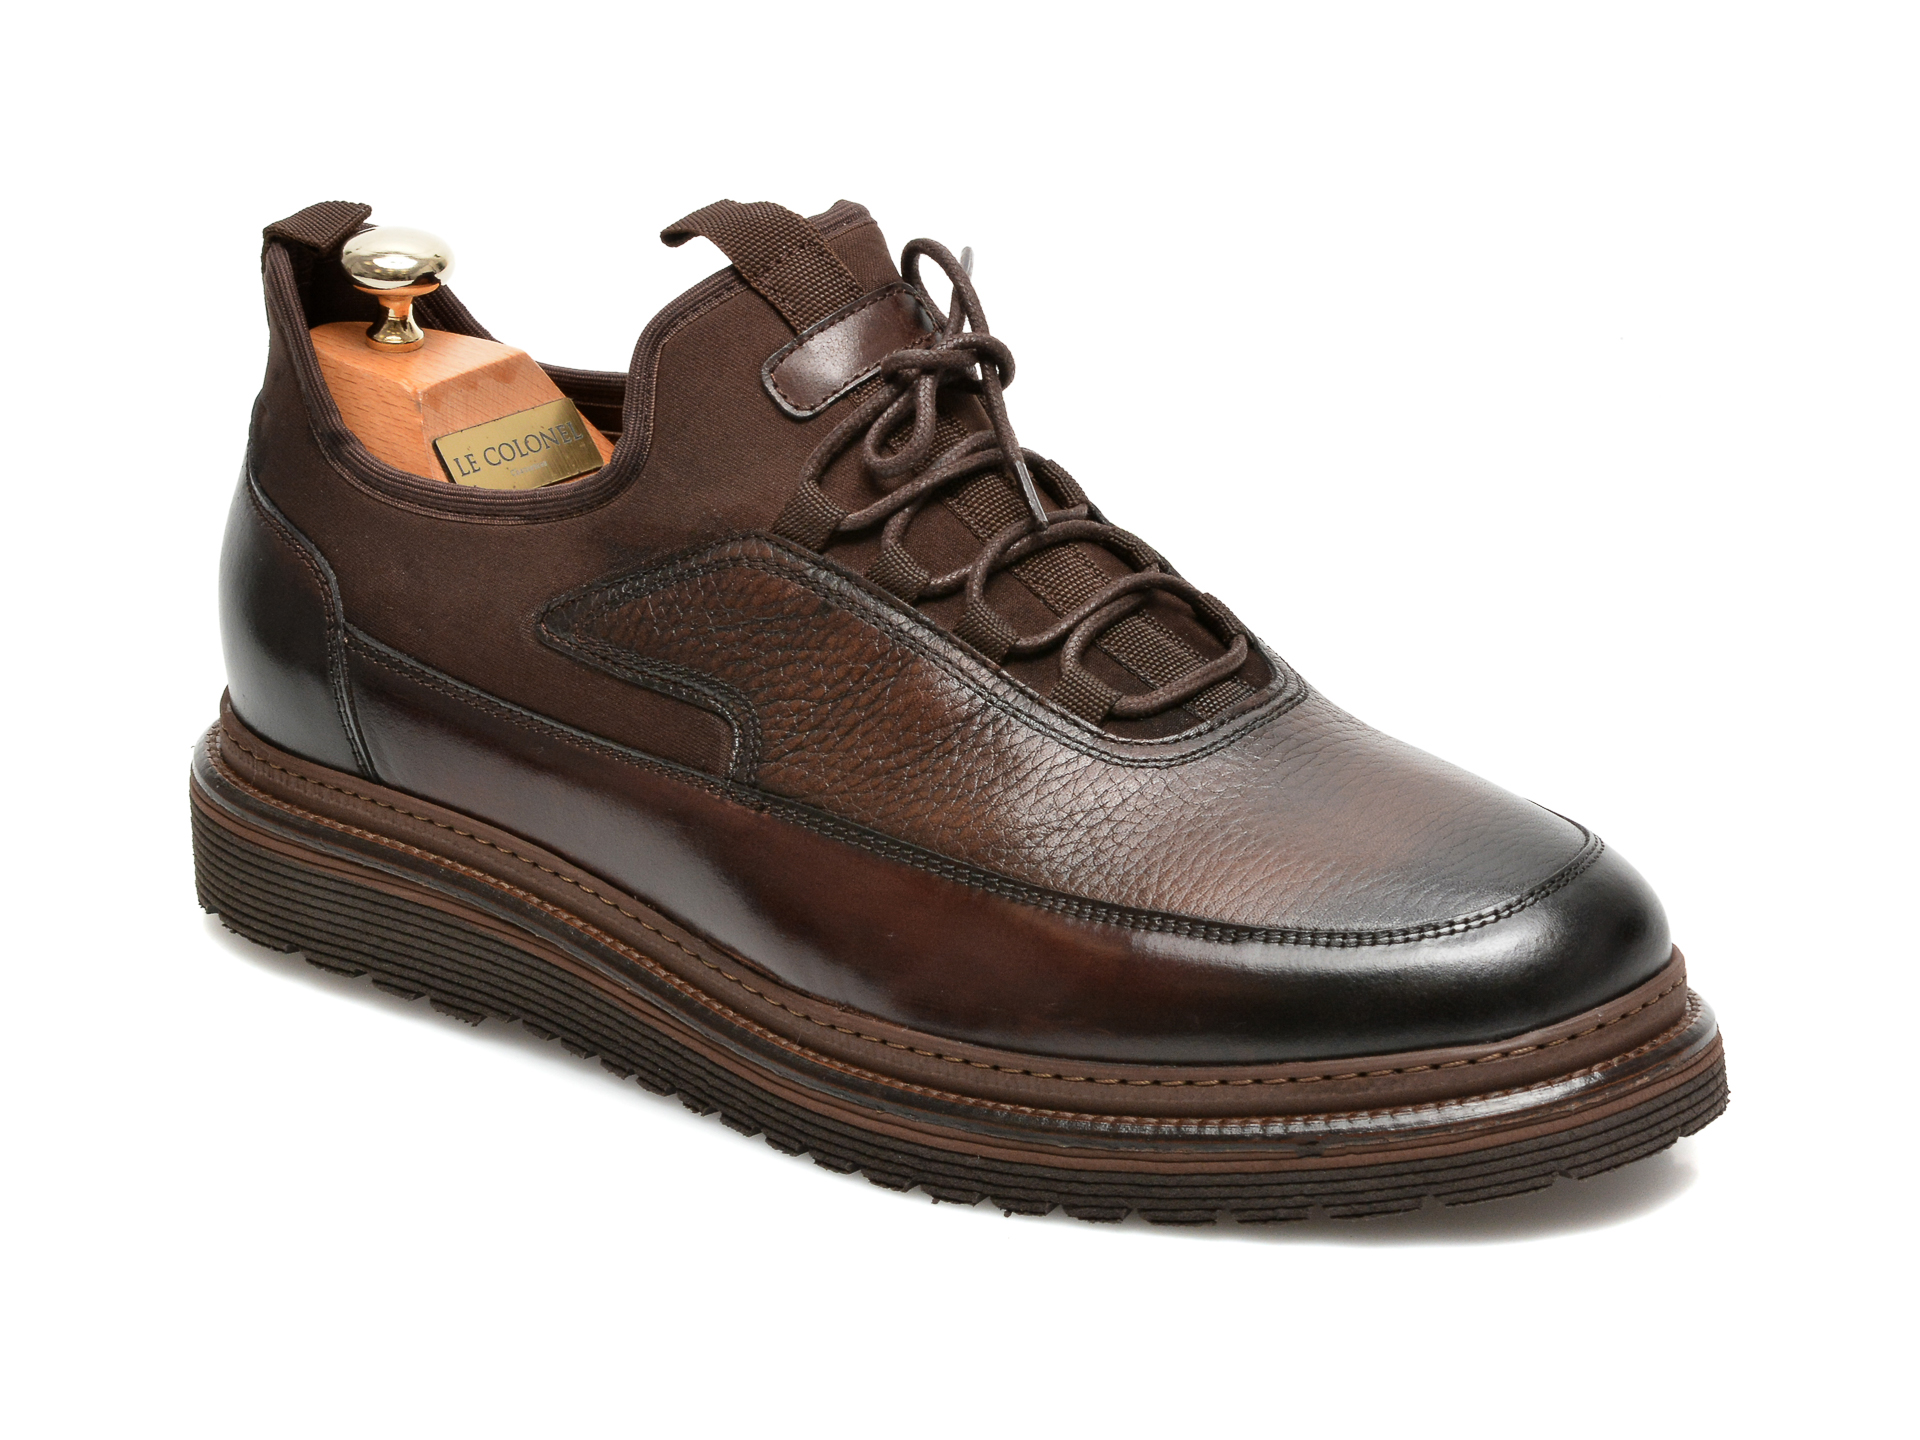 Pantofi LE COLONEL maro, 64816, din material textil si piele naturala Le Colonel